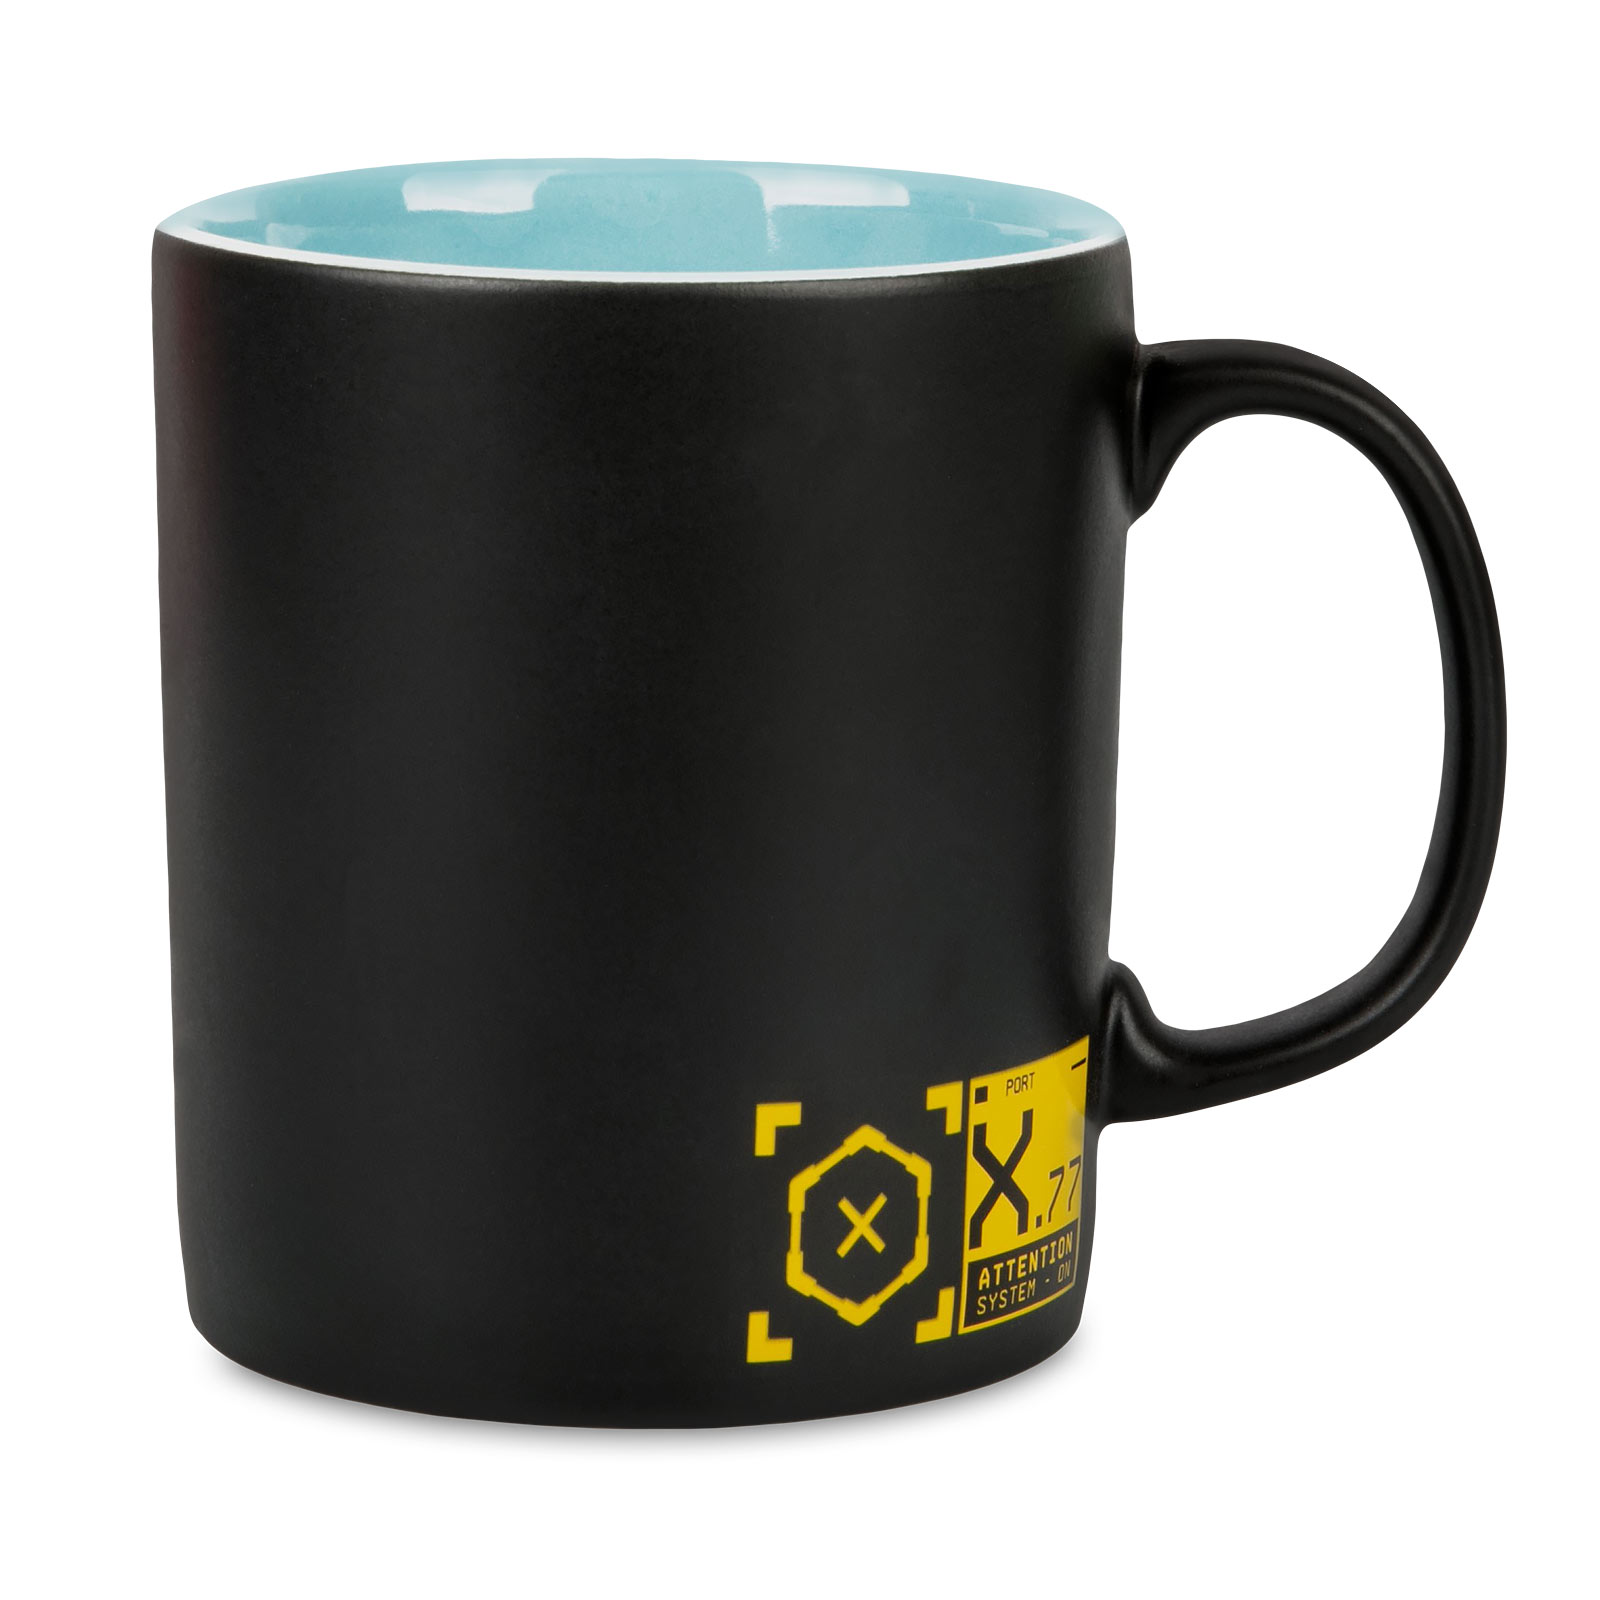 Cyberpunk 2077 - Cyber Logo Mug